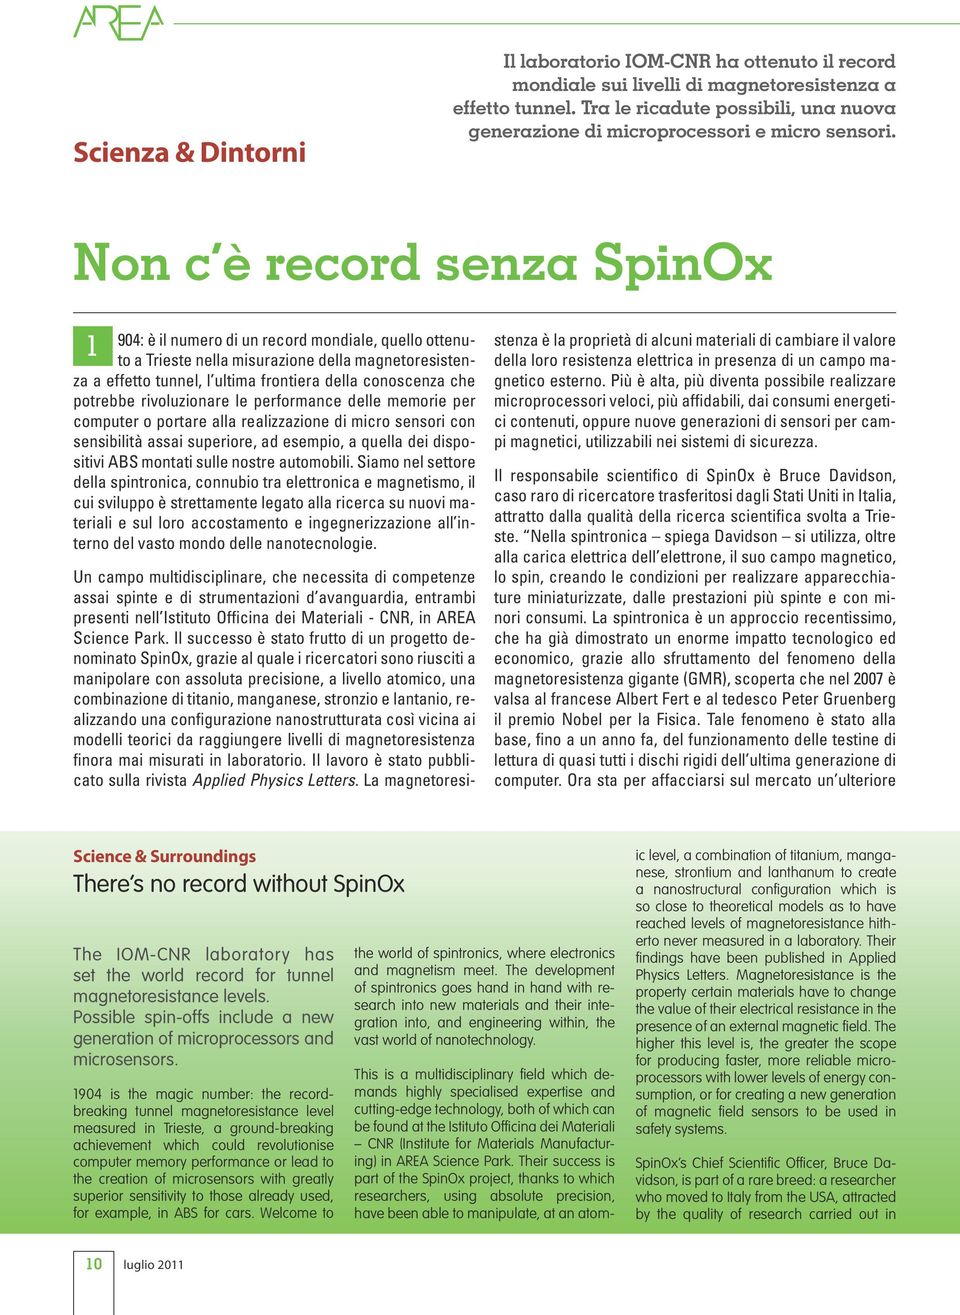 Non c è record senza SpinOx 1 904: è il numero di un record mondiale, quello ottenuto a Trieste nella misurazione della magnetoresistenza a effetto tunnel, l ultima frontiera della conoscenza che